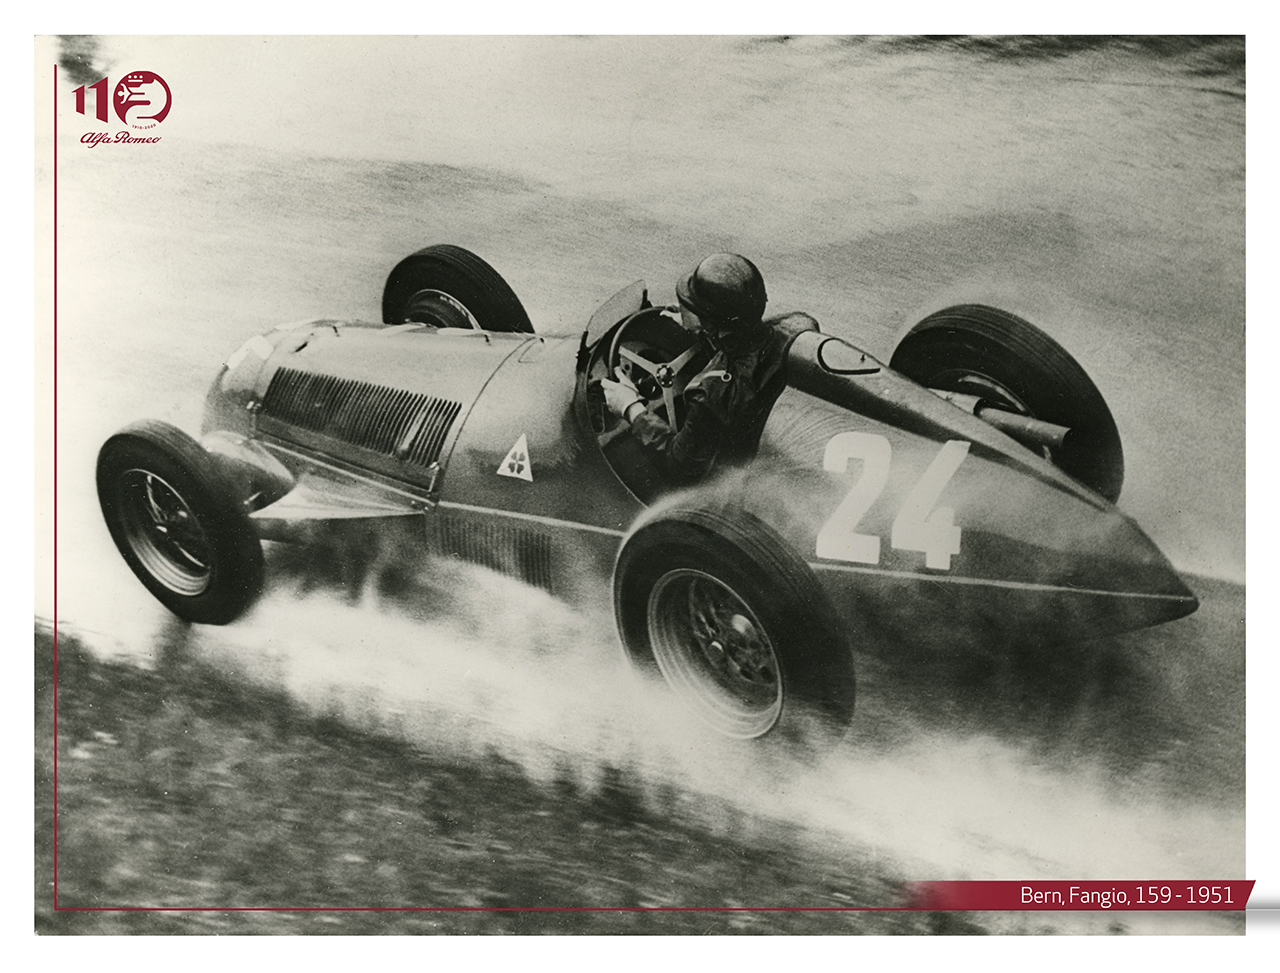 Als Alfa Romeo die erste Formel-1-Weltmeisterschaft gewann